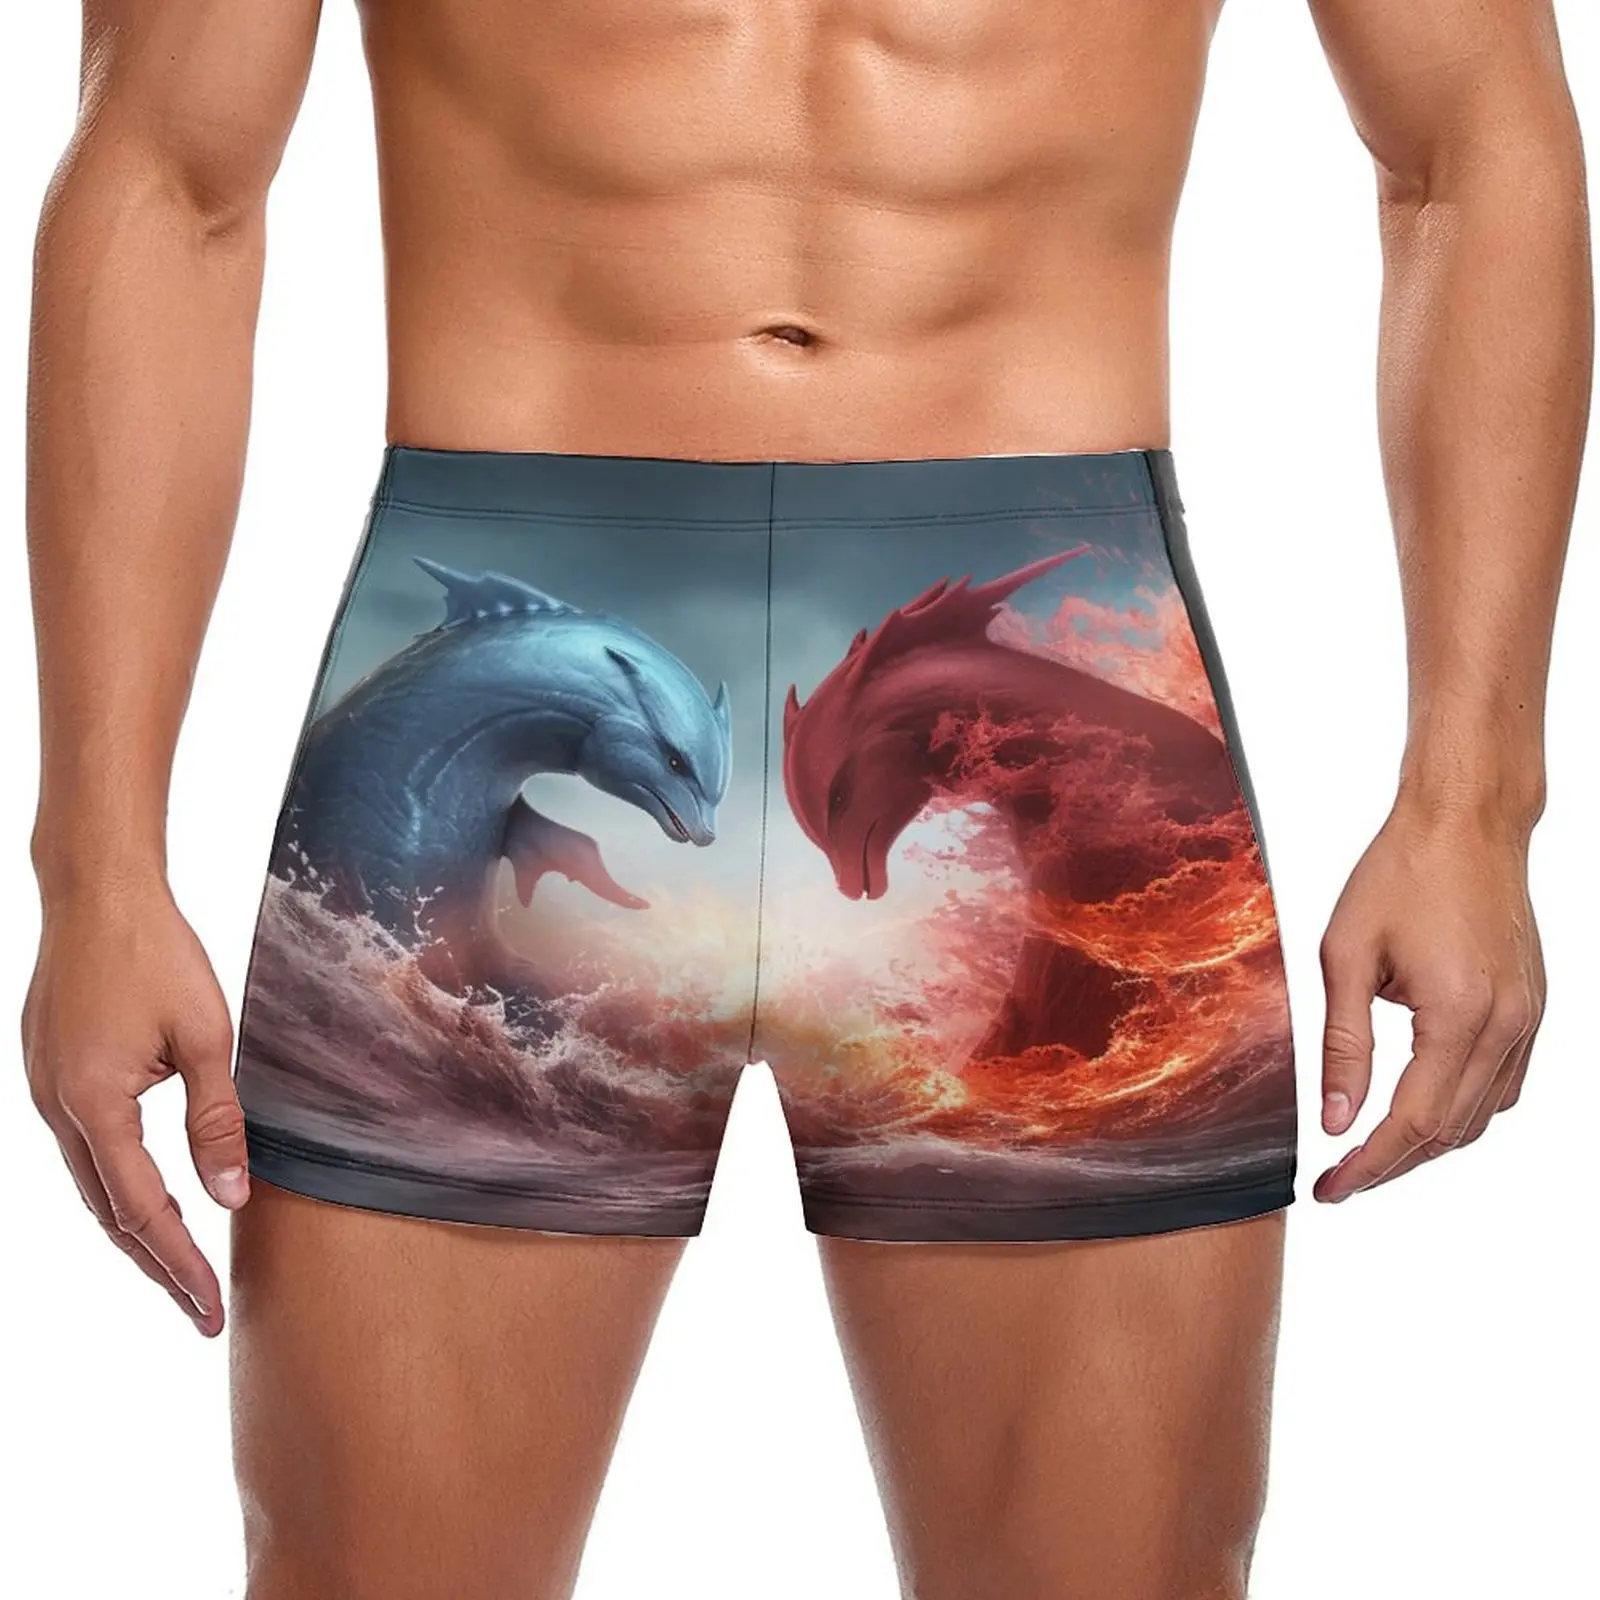 

Плавательные трусы с дельфином, 3d стиль, Инь Янь, пляжные шорты для плавания, модные быстросохнущие мужские трусы